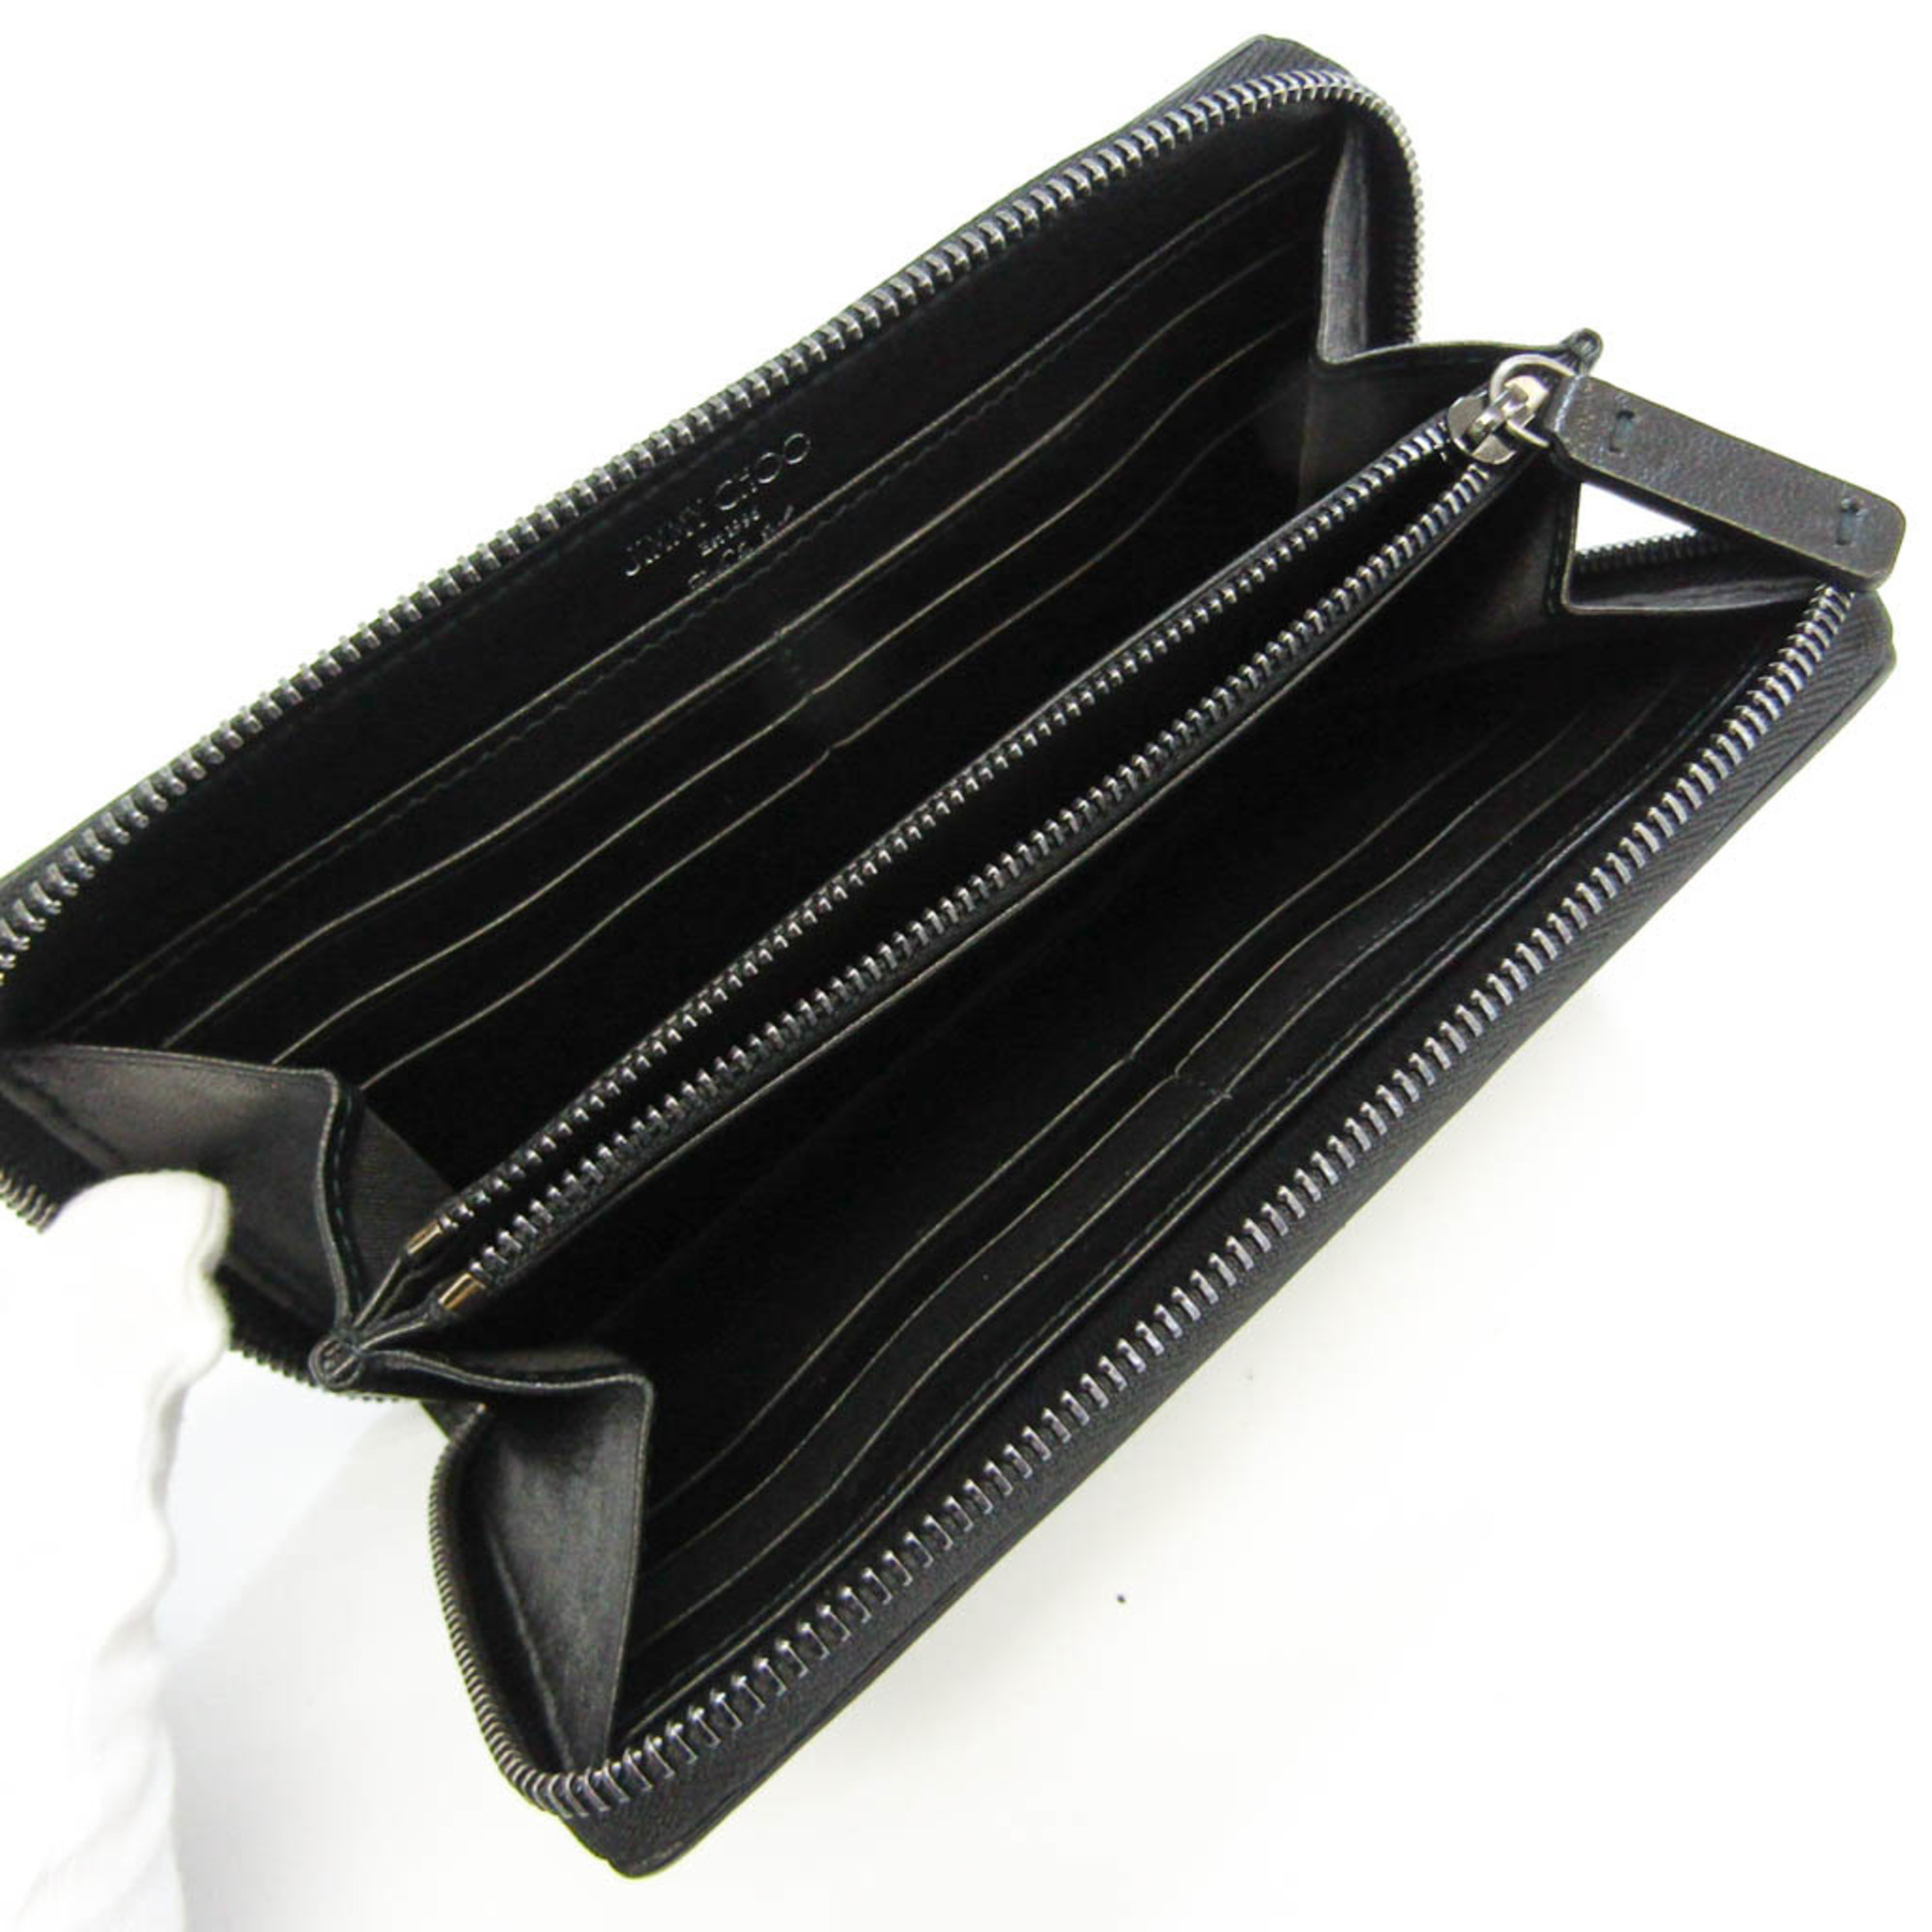 Jimmy Choo FILIPA Women's Leather Studded Long Wallet (bi-fold) Black